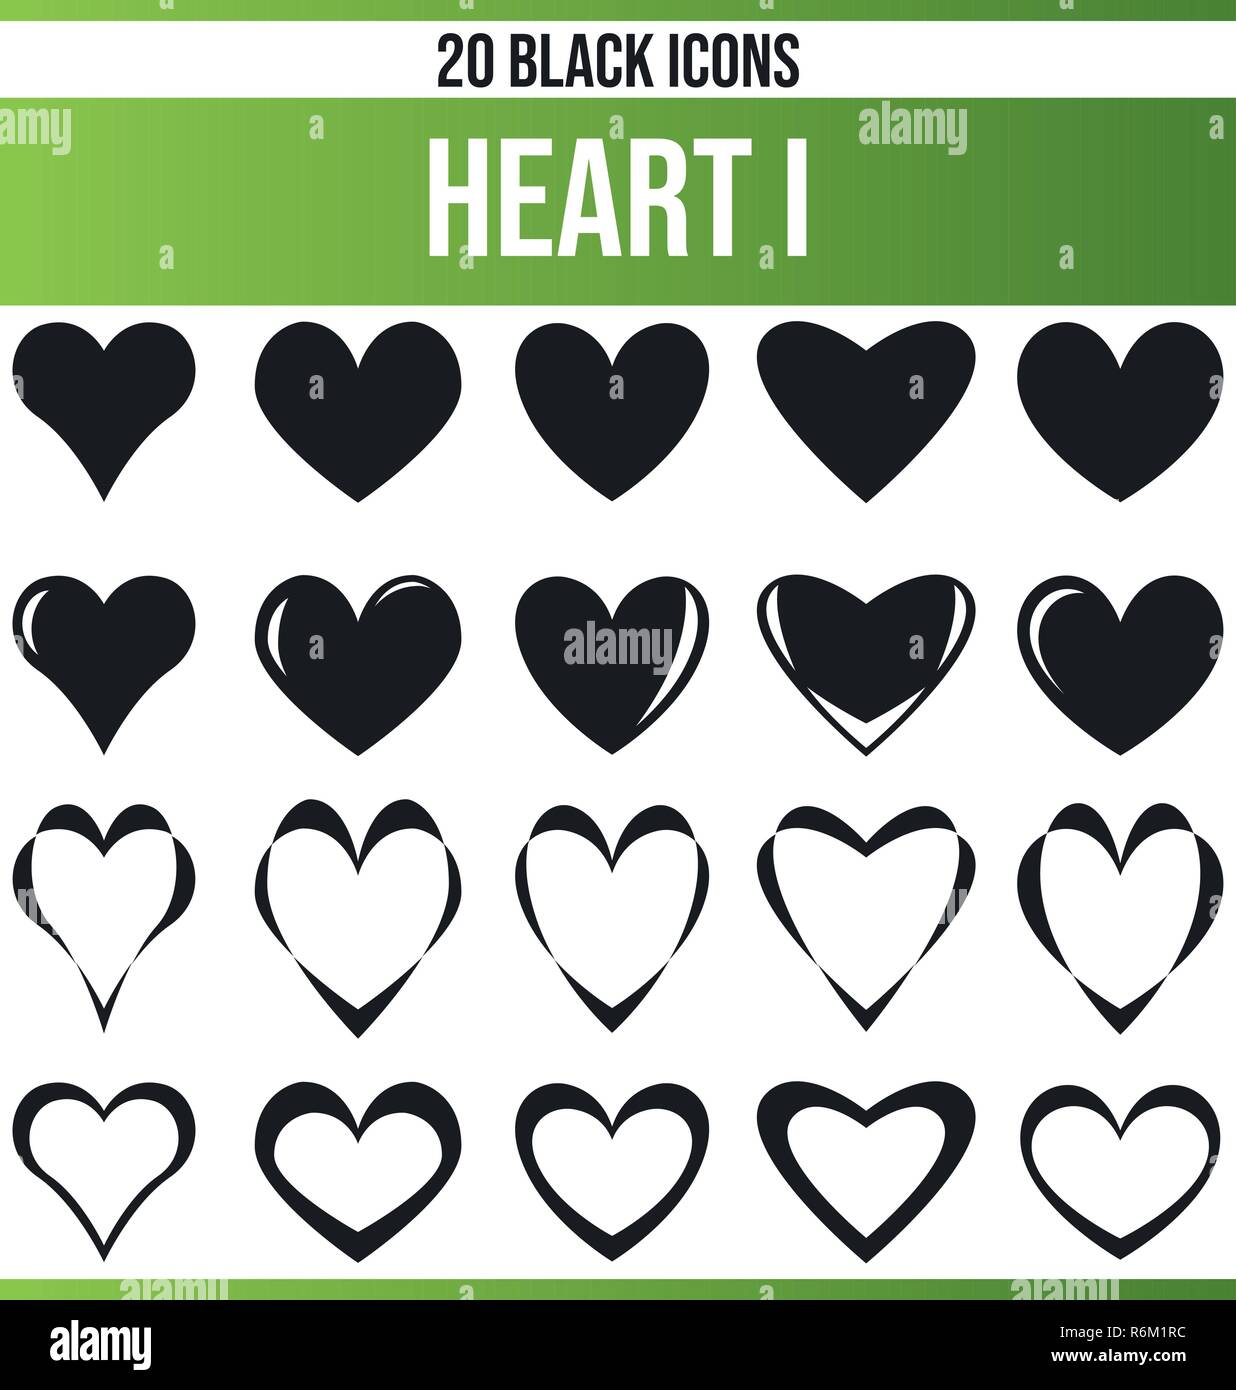 Schwarzen Symbole/Icons auf Liebe. Dieses Icon Set ist perfekt für kreative Menschen und Designer, die die Frage der Herzen in Ihrem grafischen Designs benötigen. Stock Vektor